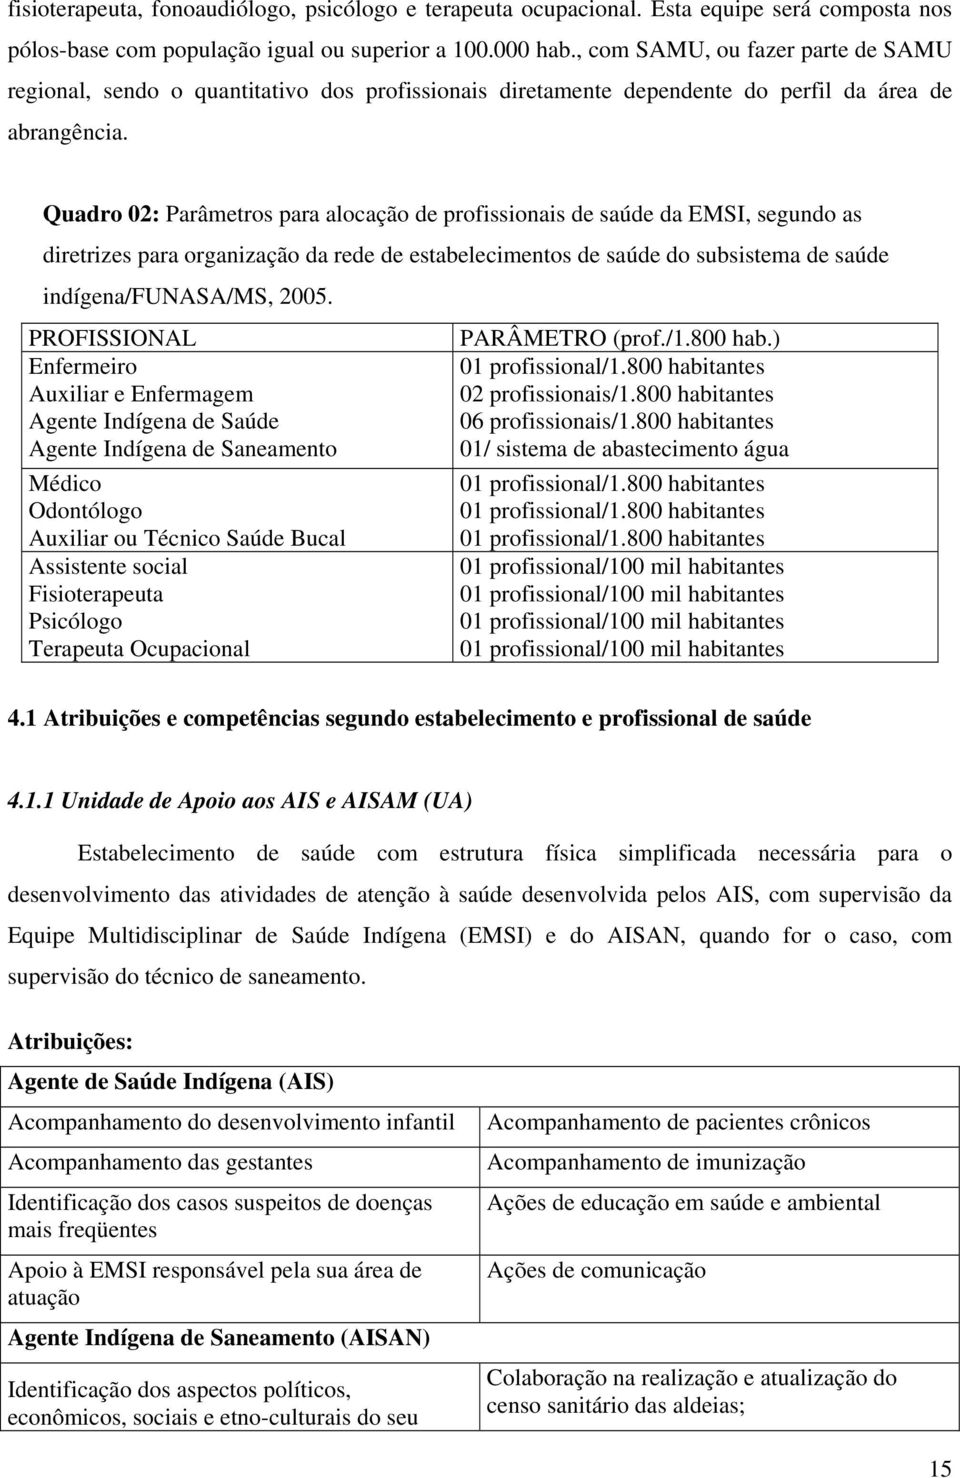 Quadro 02: Parâmetros para alocação de profissionais de saúde da EMSI, segundo as diretrizes para organização da rede de estabelecimentos de saúde do subsistema de saúde indígena/funasa/ms, 2005.